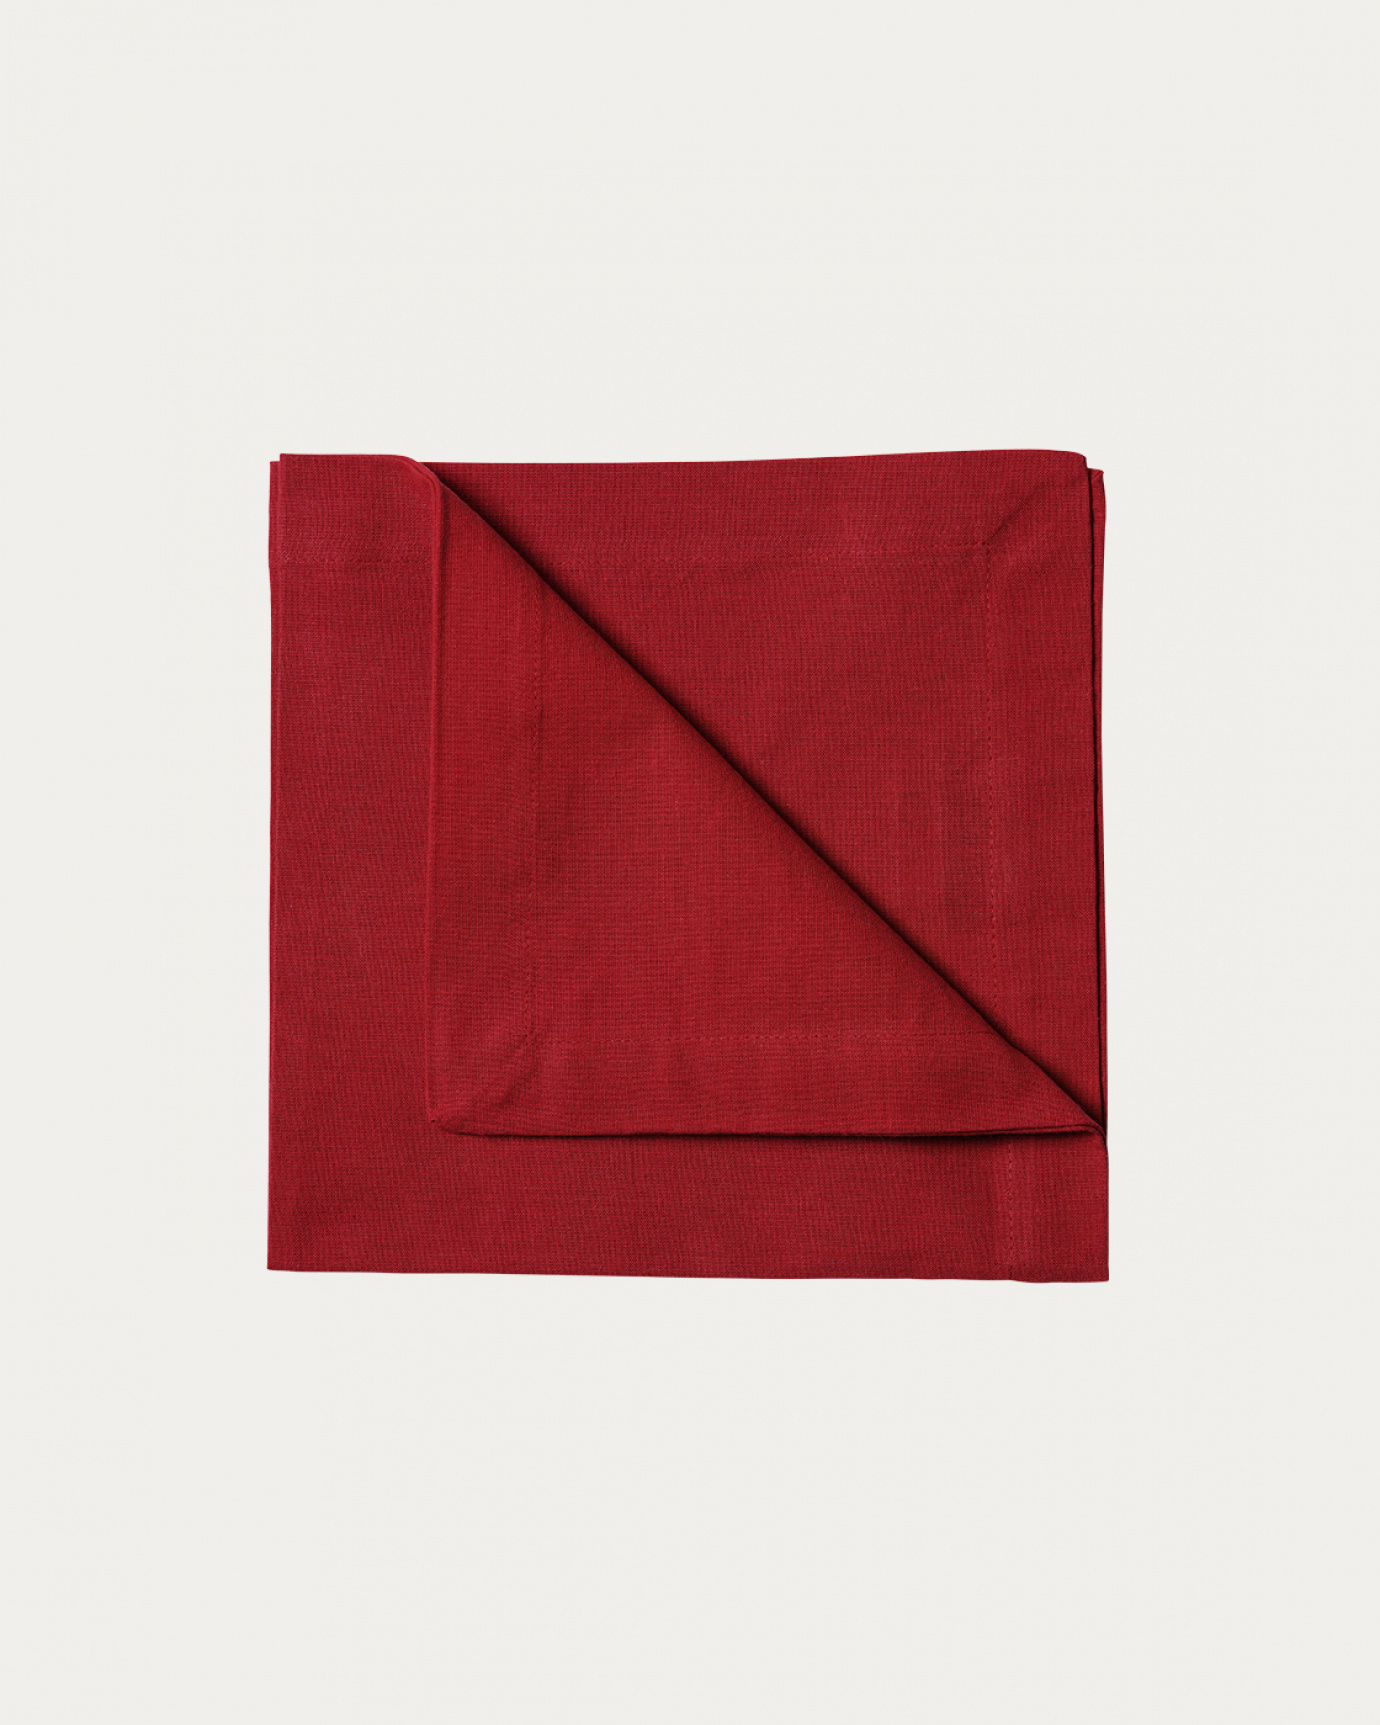 Immagine prodotto rosso ROBERT tovagliolo in morbido cotone di LINUM DESIGN. Dimensioni 45x45 cm e venduto in 4-pezzi.